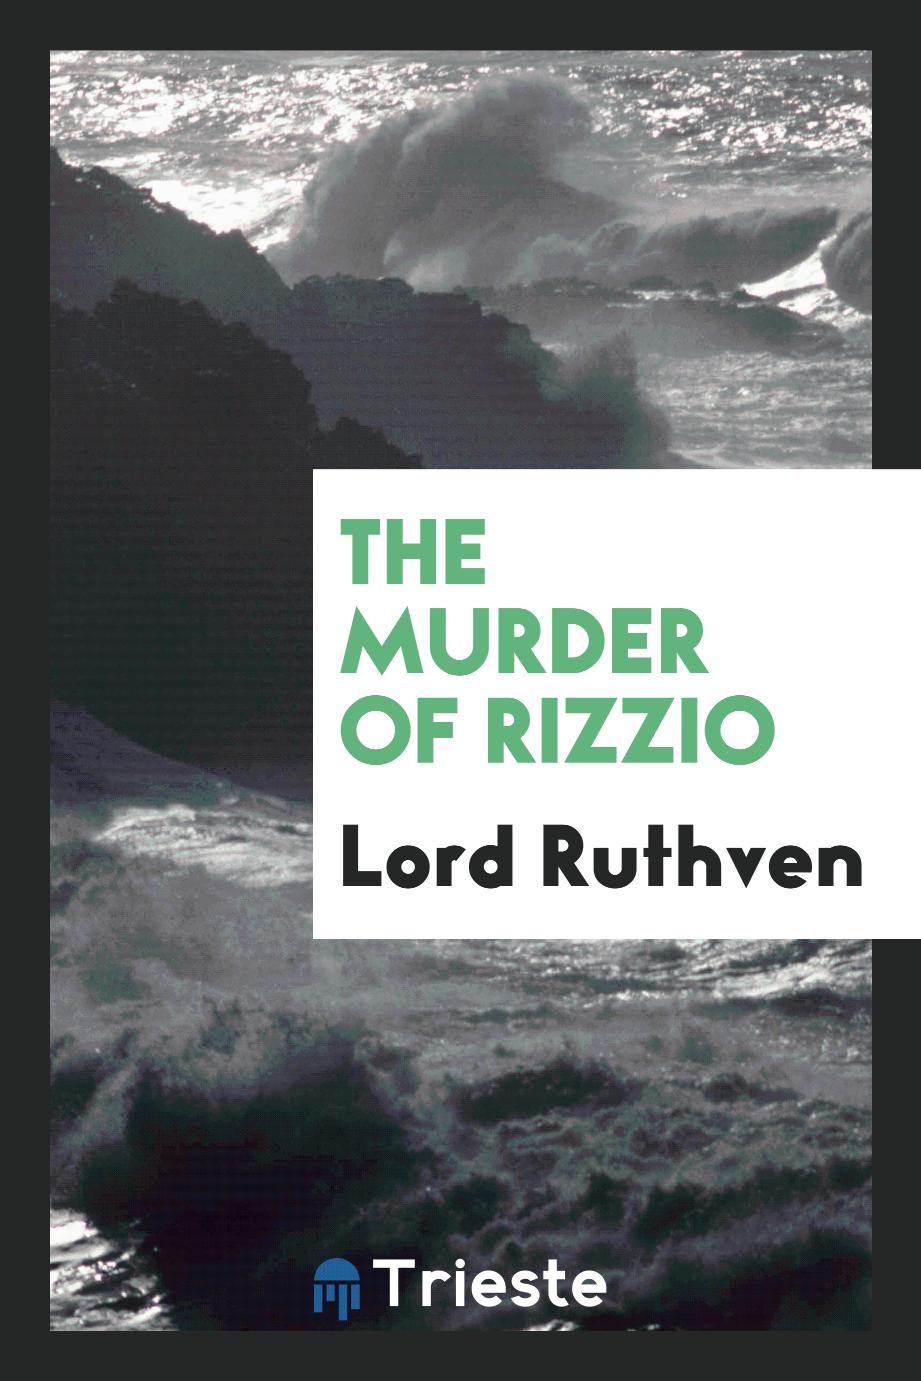 The murder of Rizzio